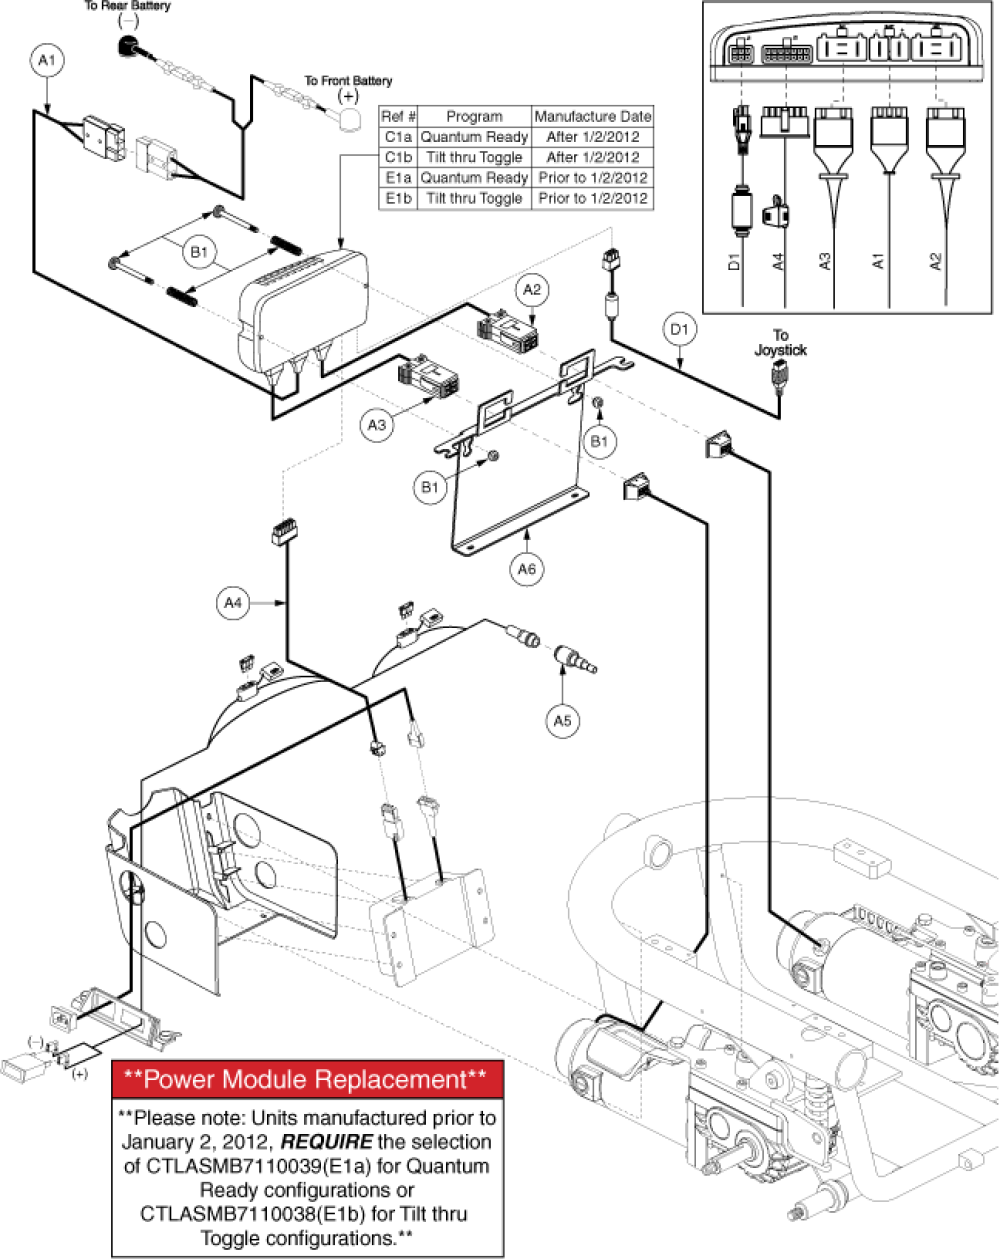 Electronics Assembly - Qlogic, Qr/tilt Thru Tog, Onboard parts diagram